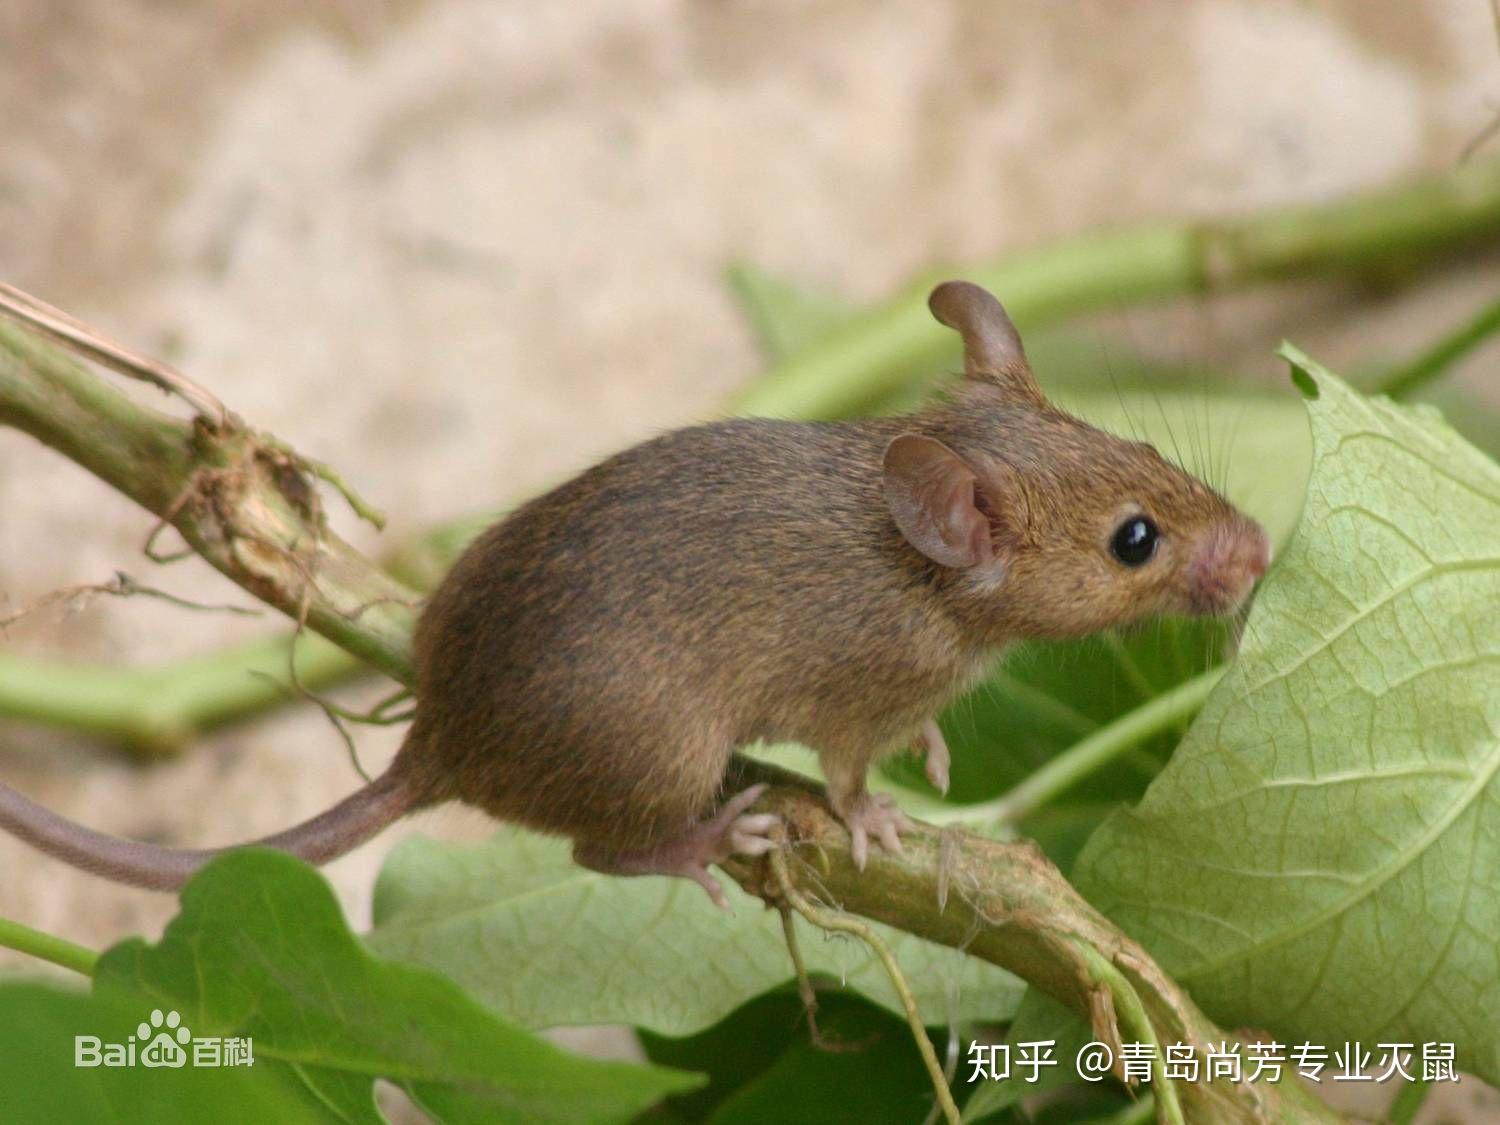 花栗鼠东部striatus花栗鼠类 库存图片. 图片 包括有 花栗鼠, 通配, 敌意, 动物区系, 东部 - 13899731